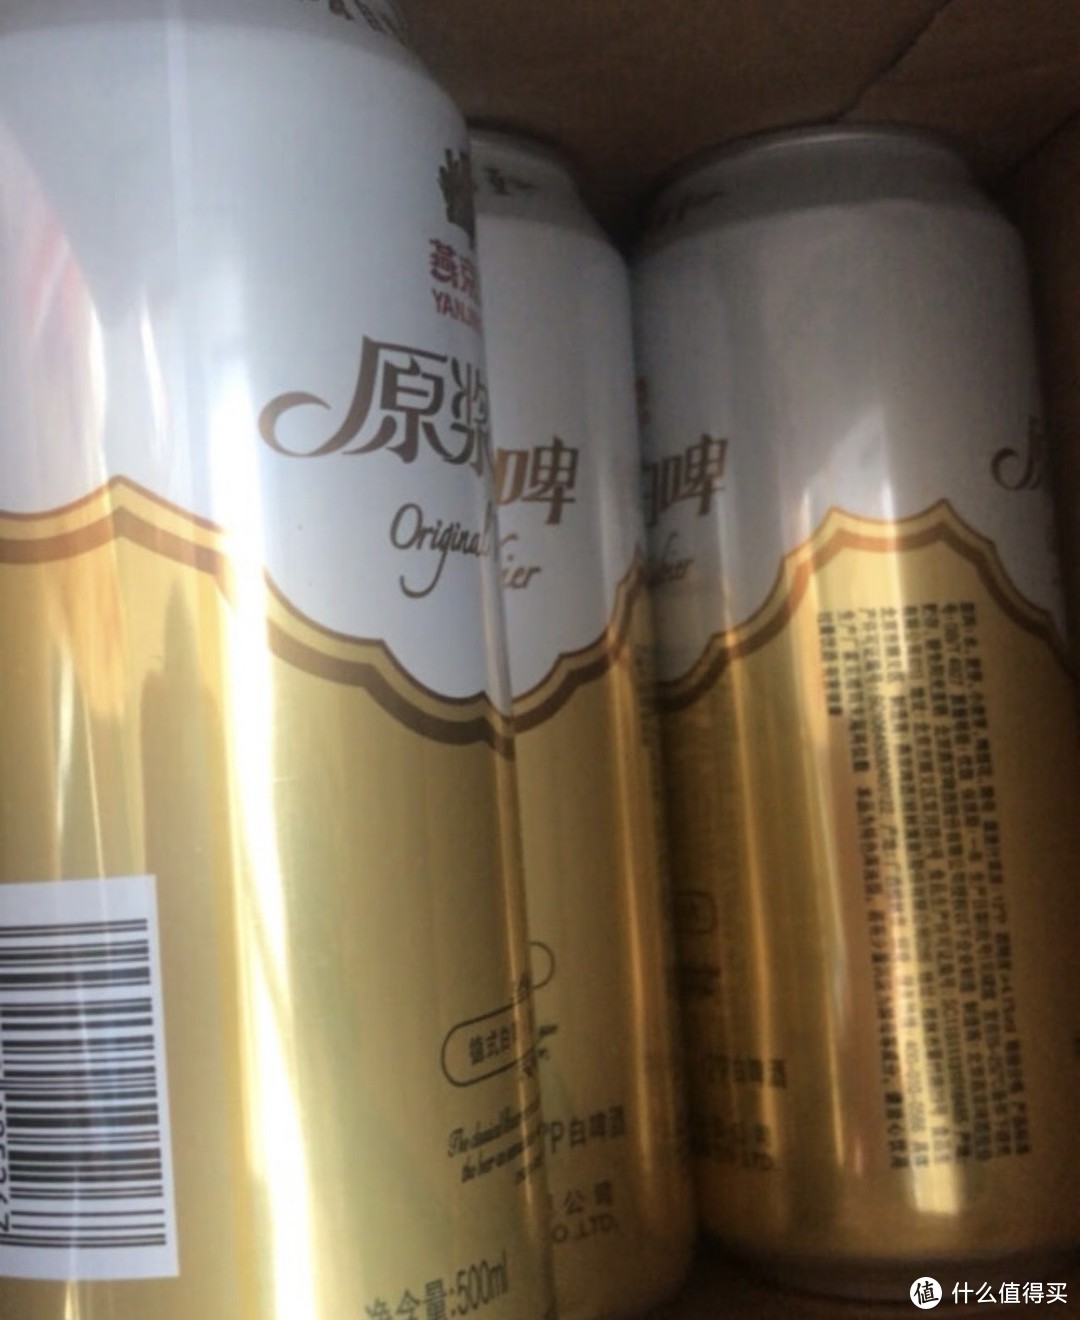 燕京啤酒 11.7° P 原浆白啤比利时小麦，让身体和心灵都得到满足！